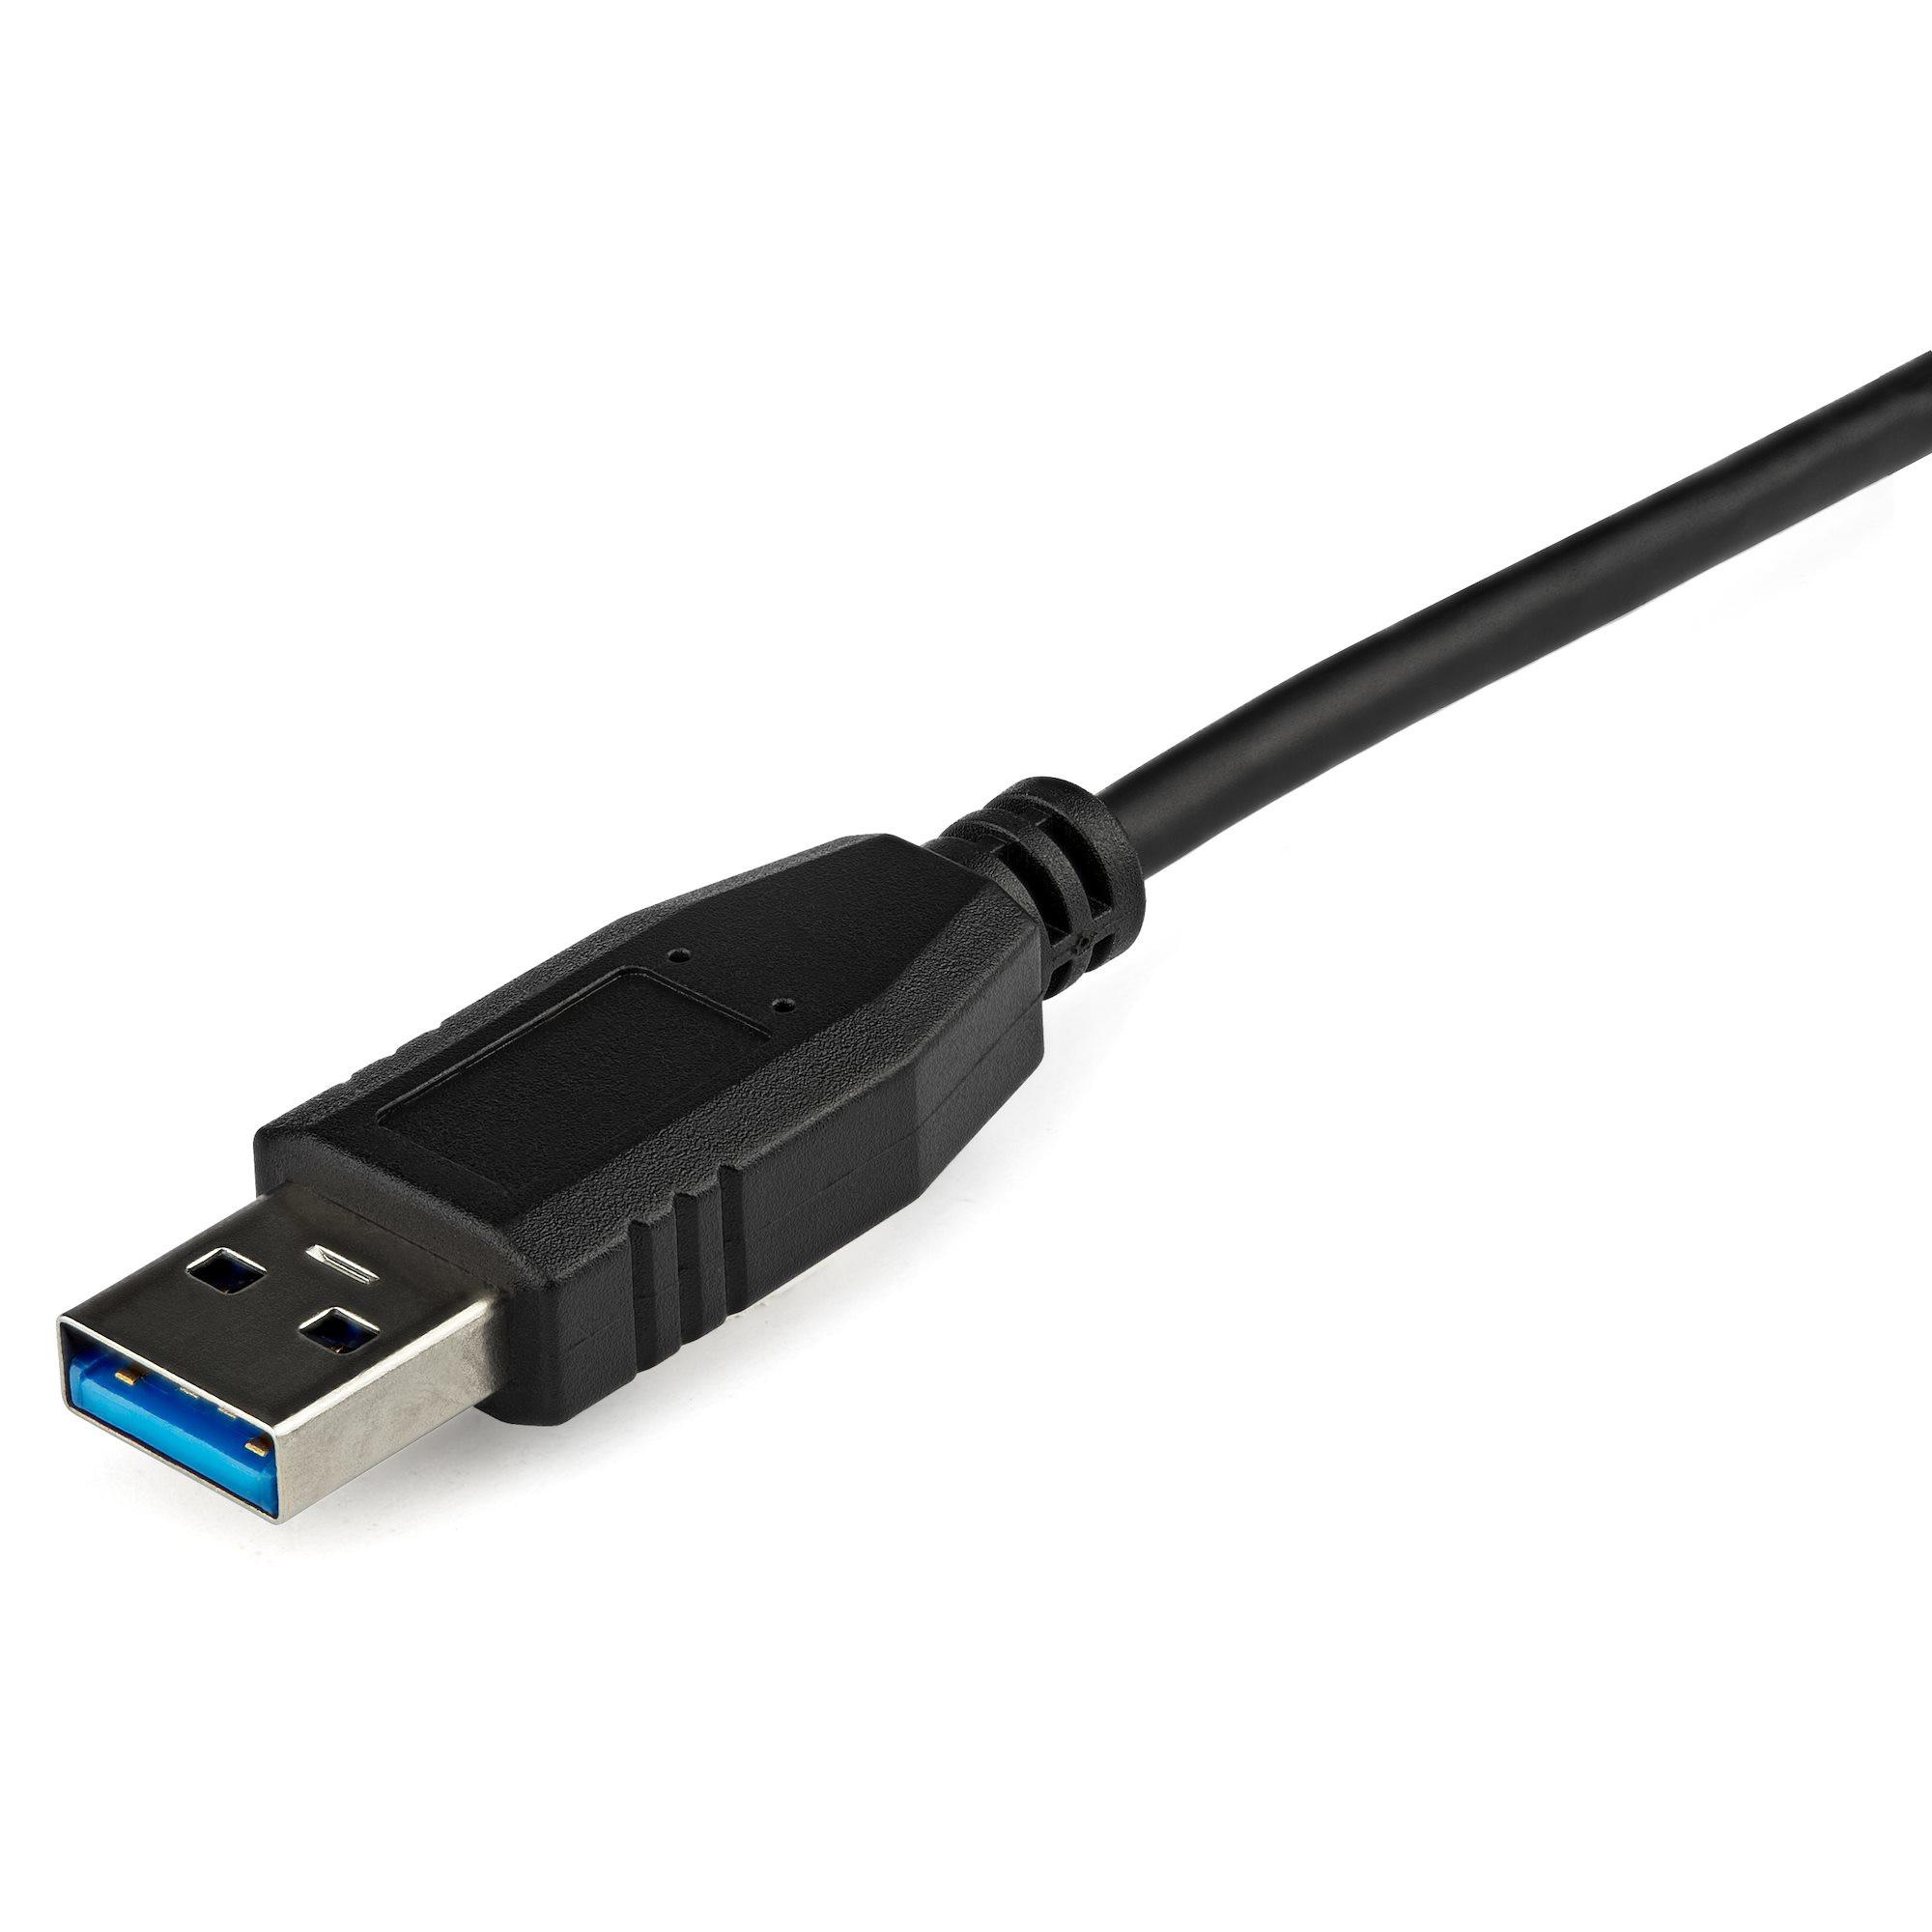 STARTECH  Adattatore da USB 3.0 a Gigabit Ethernet per Windows e Mac - Convertitore di rete NIC 10/100/1000 - Adattatore di rete da USB a RJ45 per laptop e computer desktop - Alimentazione tramite bus USB 